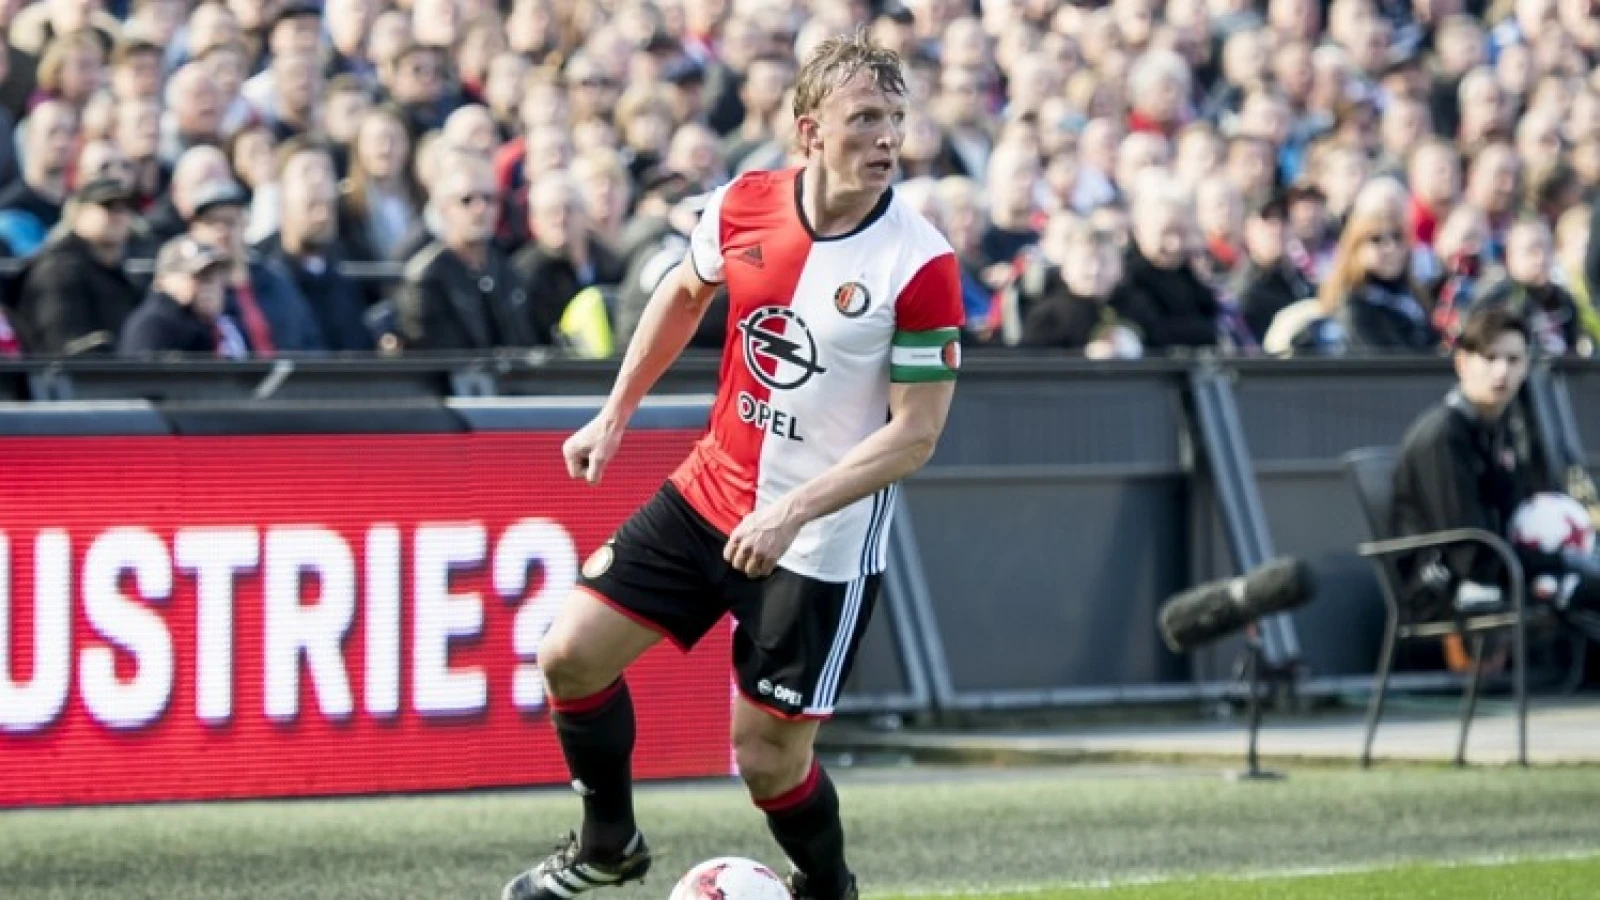 OPSTELLING | Geen Dirk Kuyt in de basiself van Feyenoord